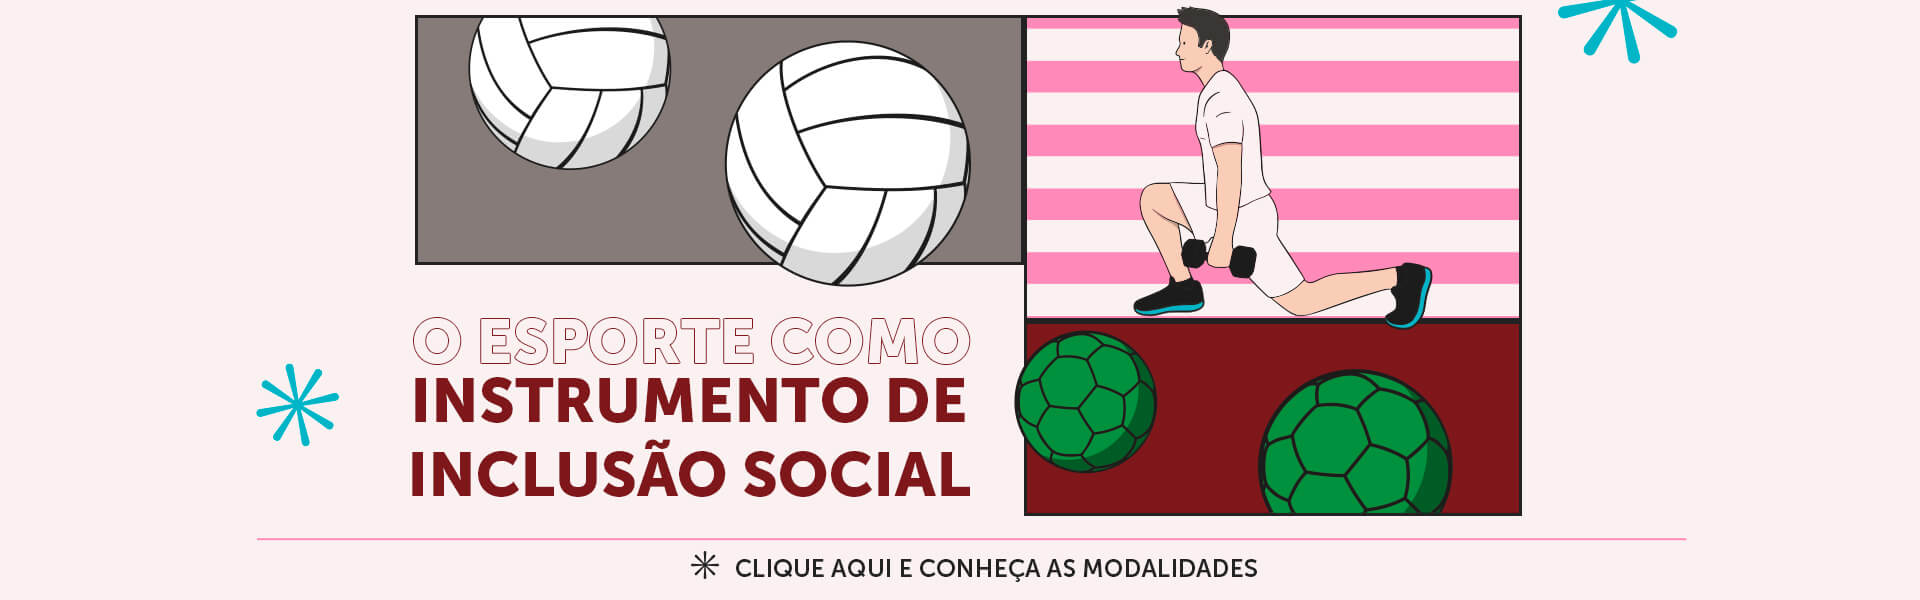 Banner-esporte-inclusao-social